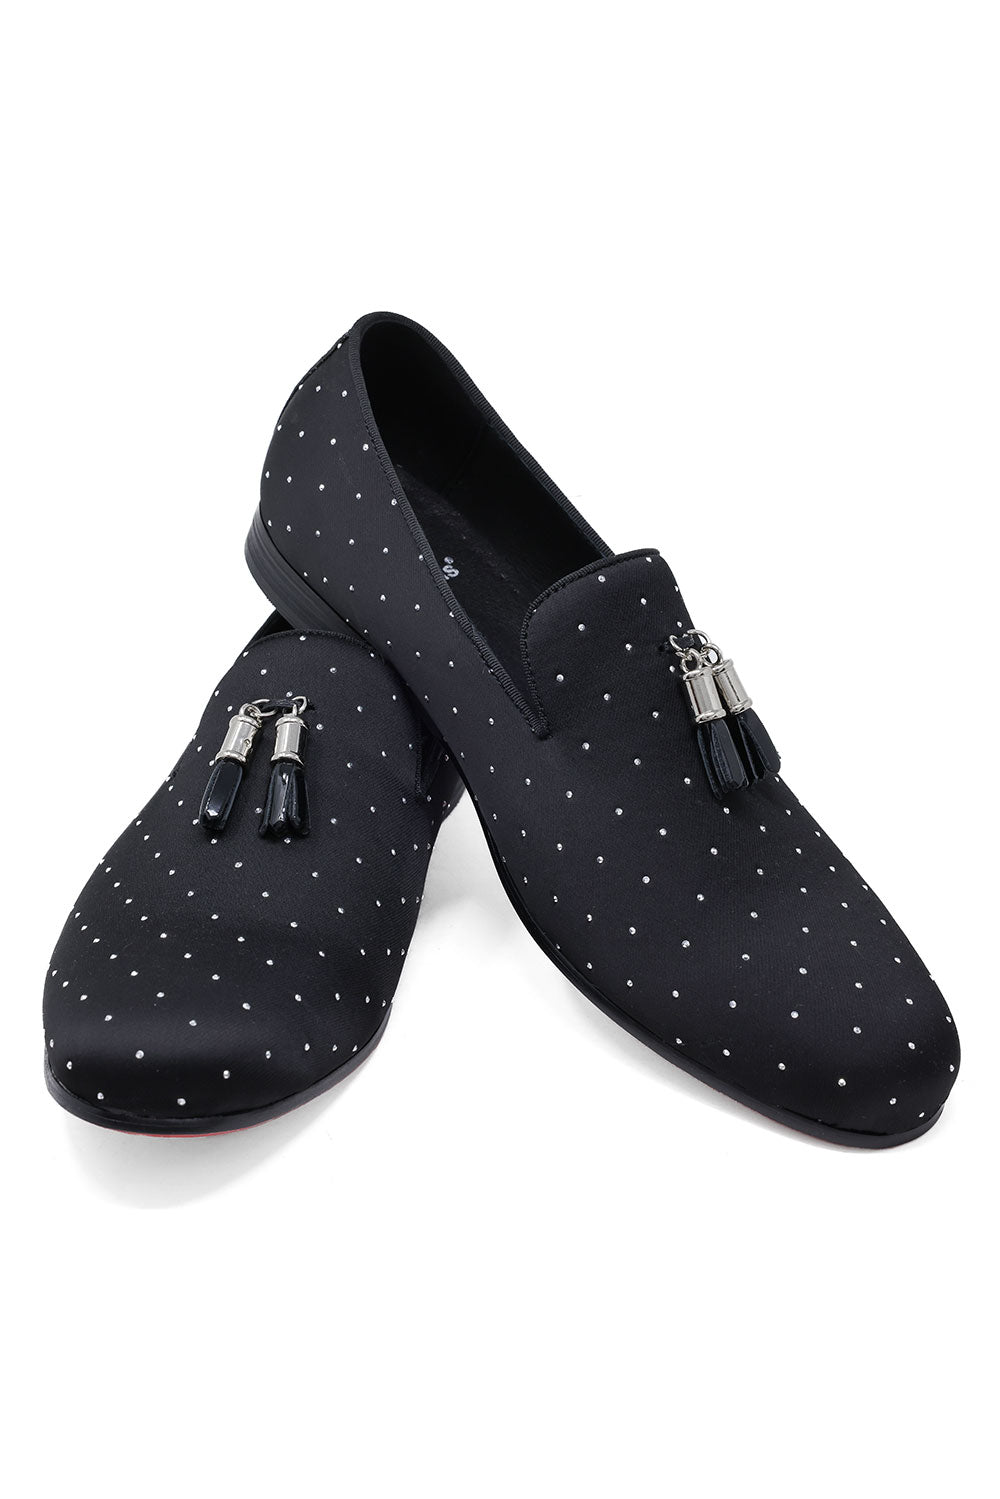 BARABAS Men's Solid Pattern Design Luxury Tassel Loafer Shoes SH3087 Black Silver